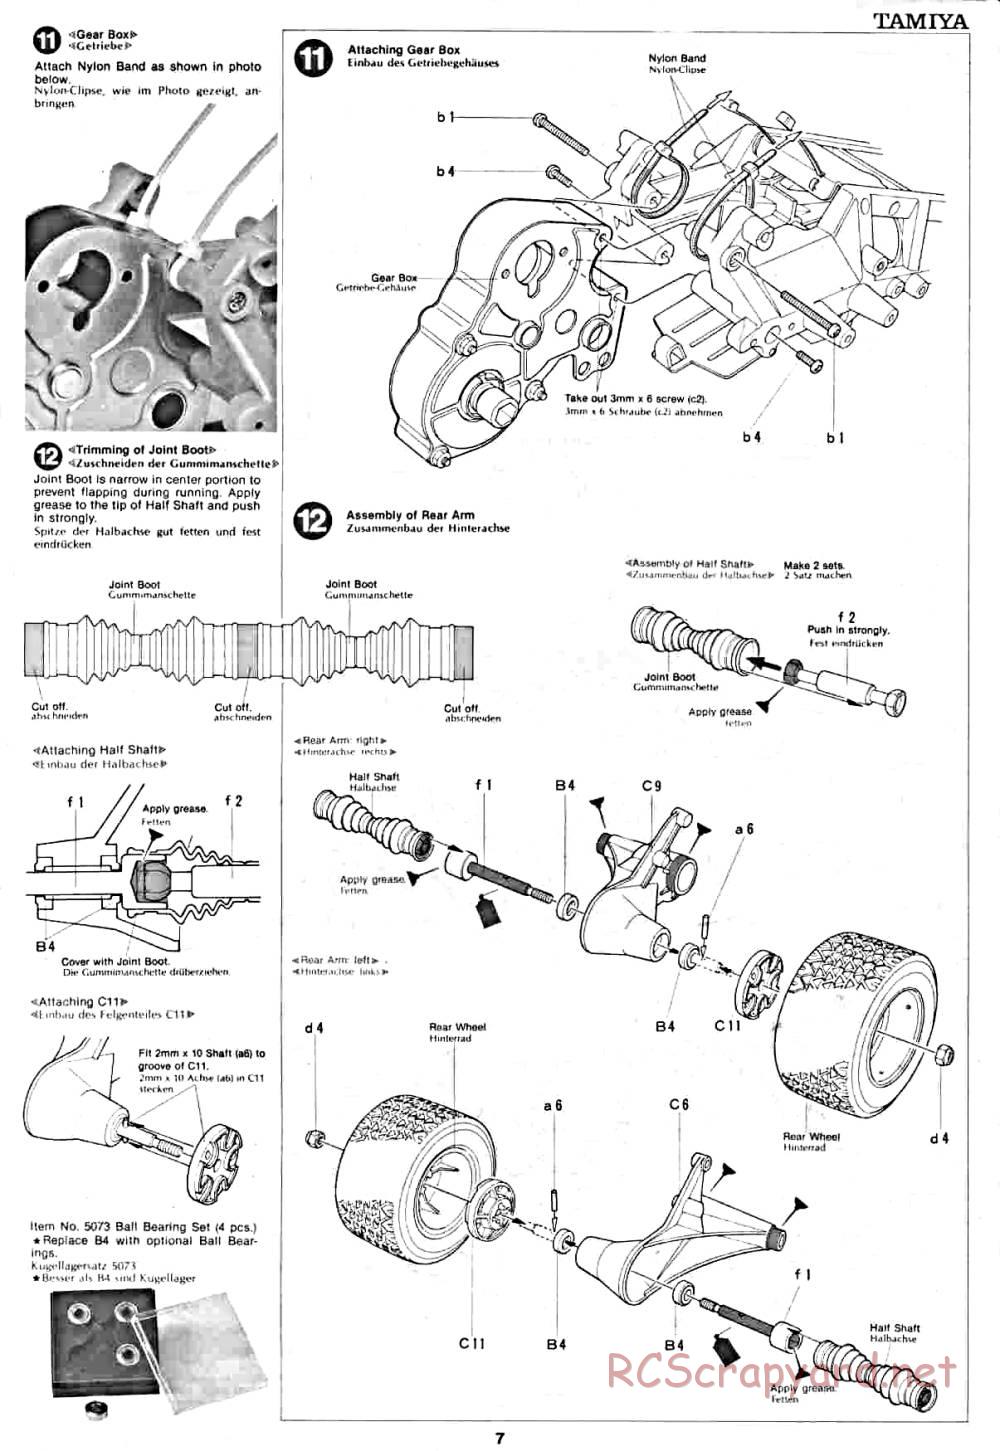 Tamiya - Lancia Rally - 58040 - Manual - Page 7